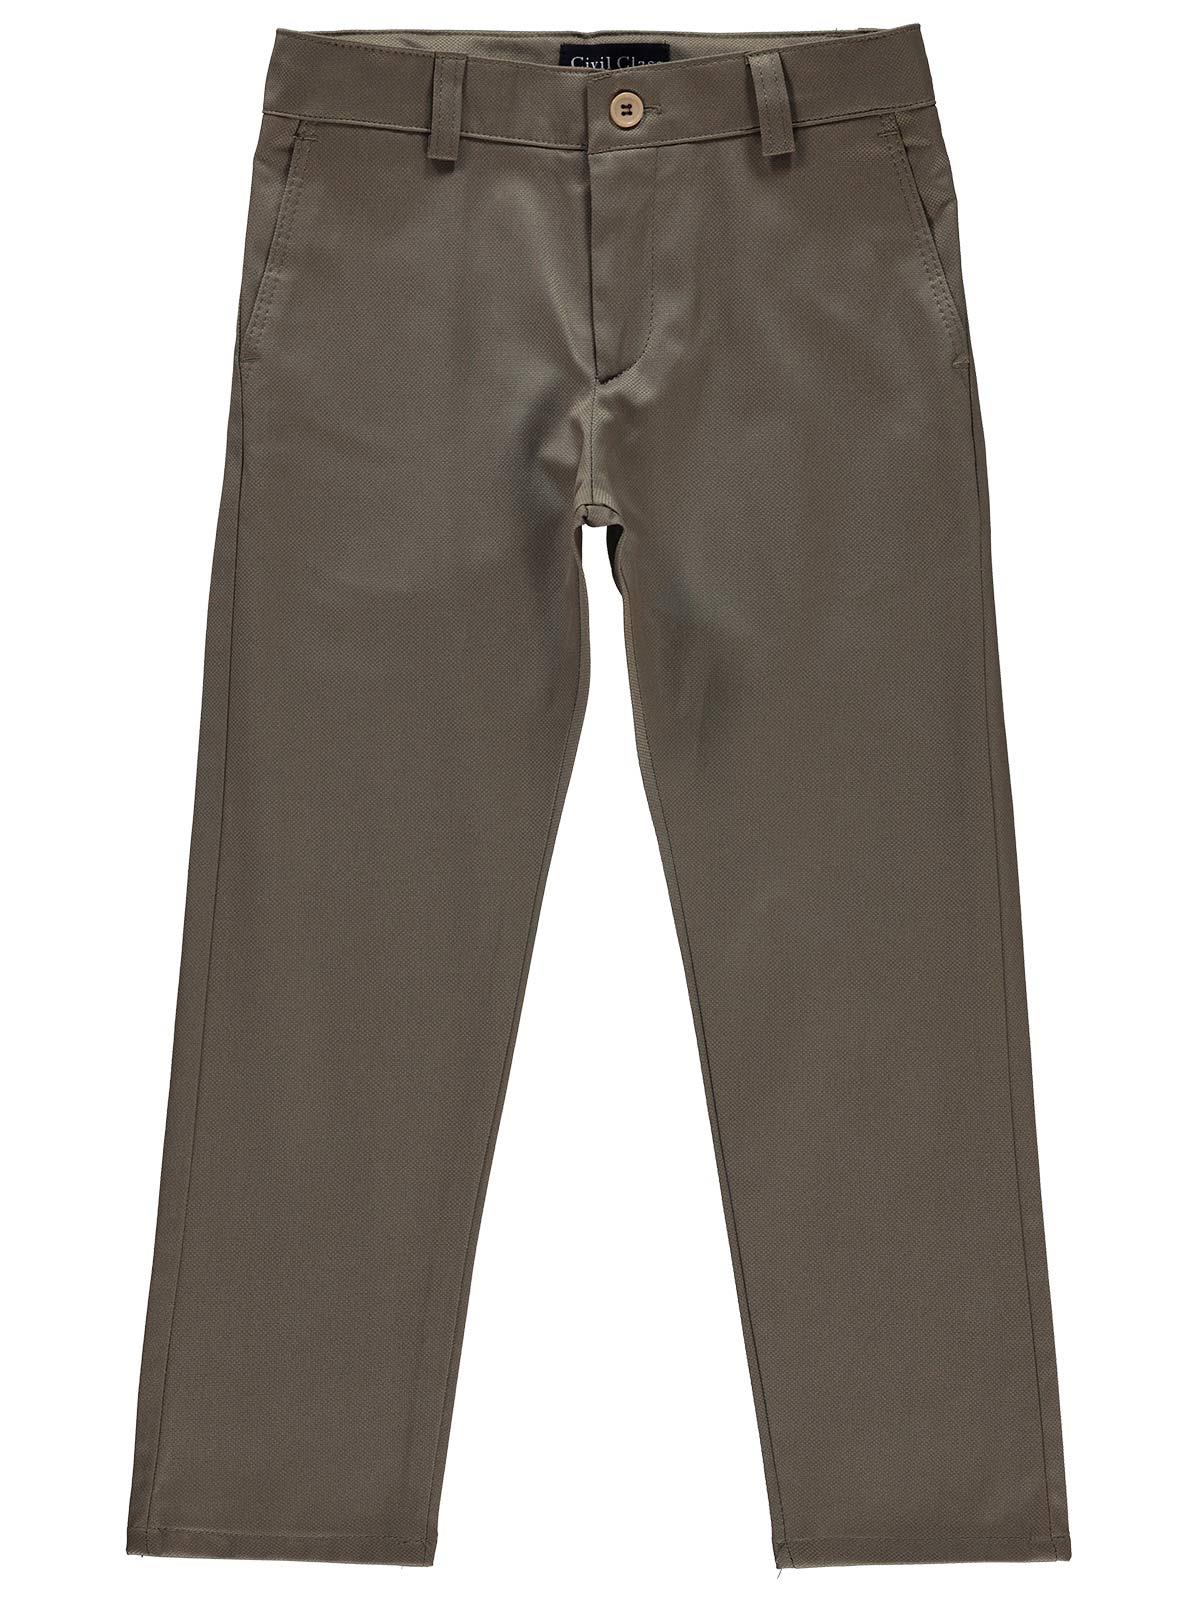 Civil Class Klasik Erkek Çocuk Pantolon 6-9 Yaş Kahverengi